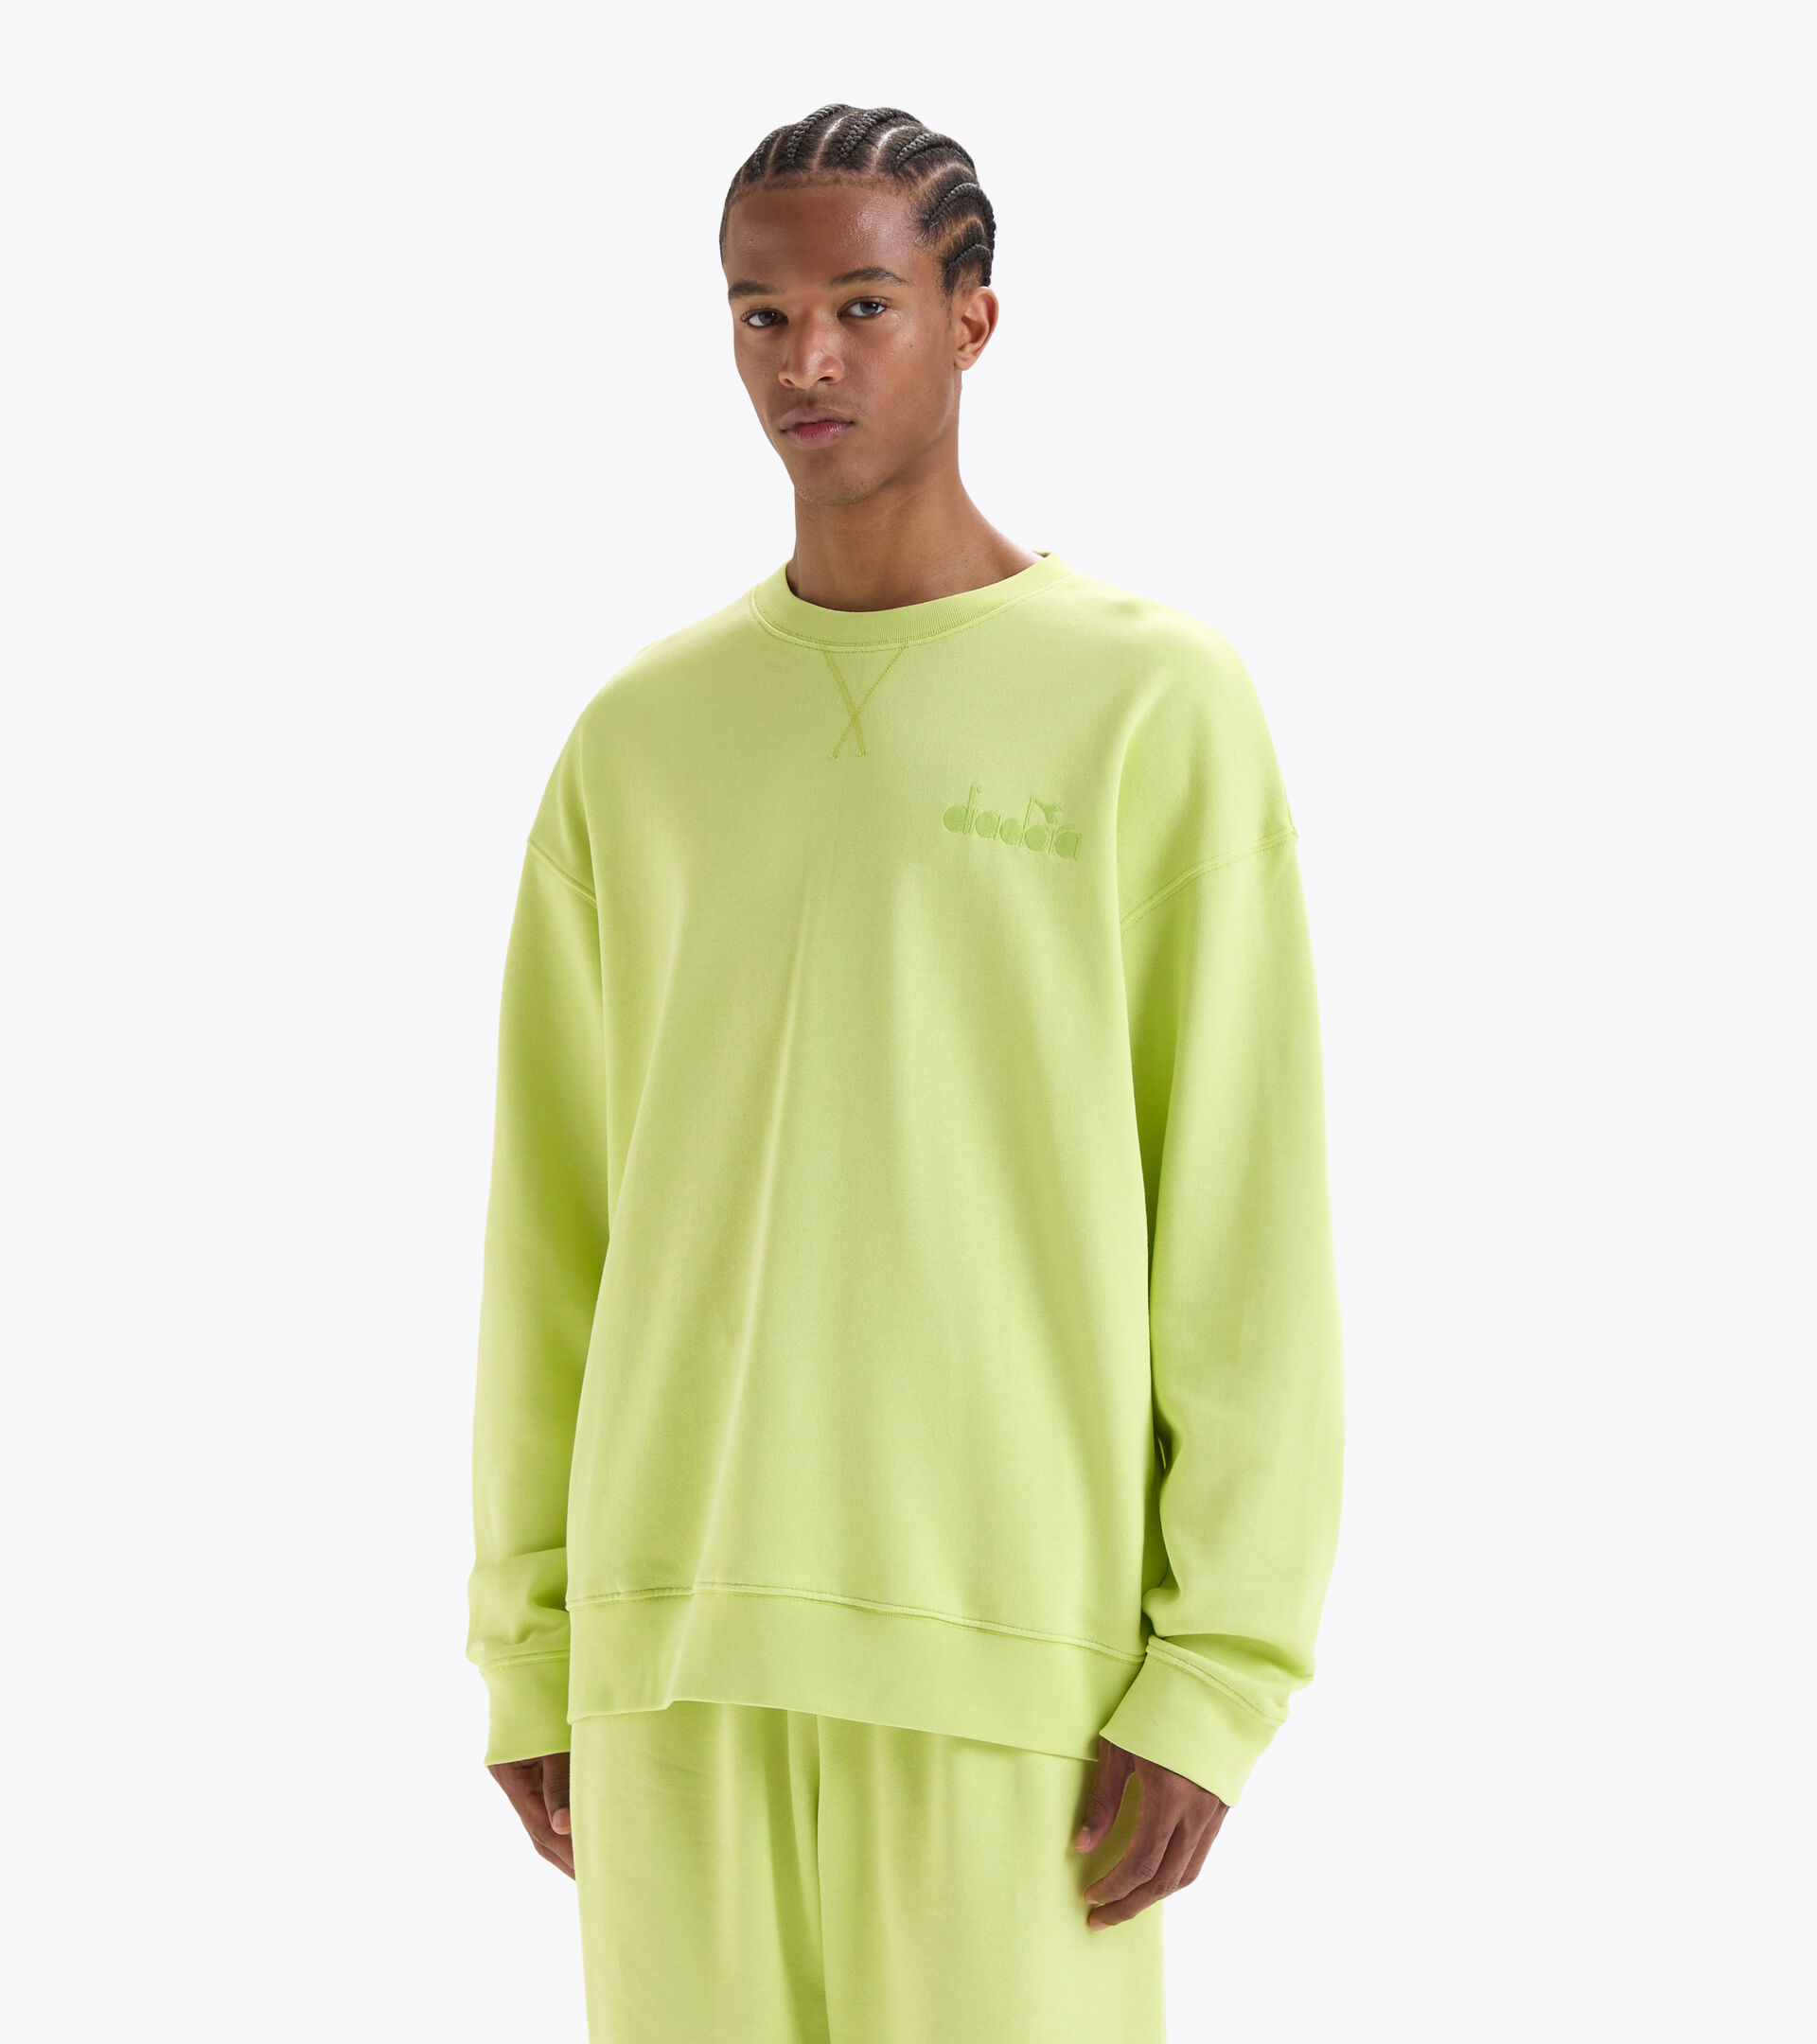 Cotton sweatshirt - Gender neutral SWEATSHIRT CREW SPW LOGO DARK LIME GREEN - Diadora